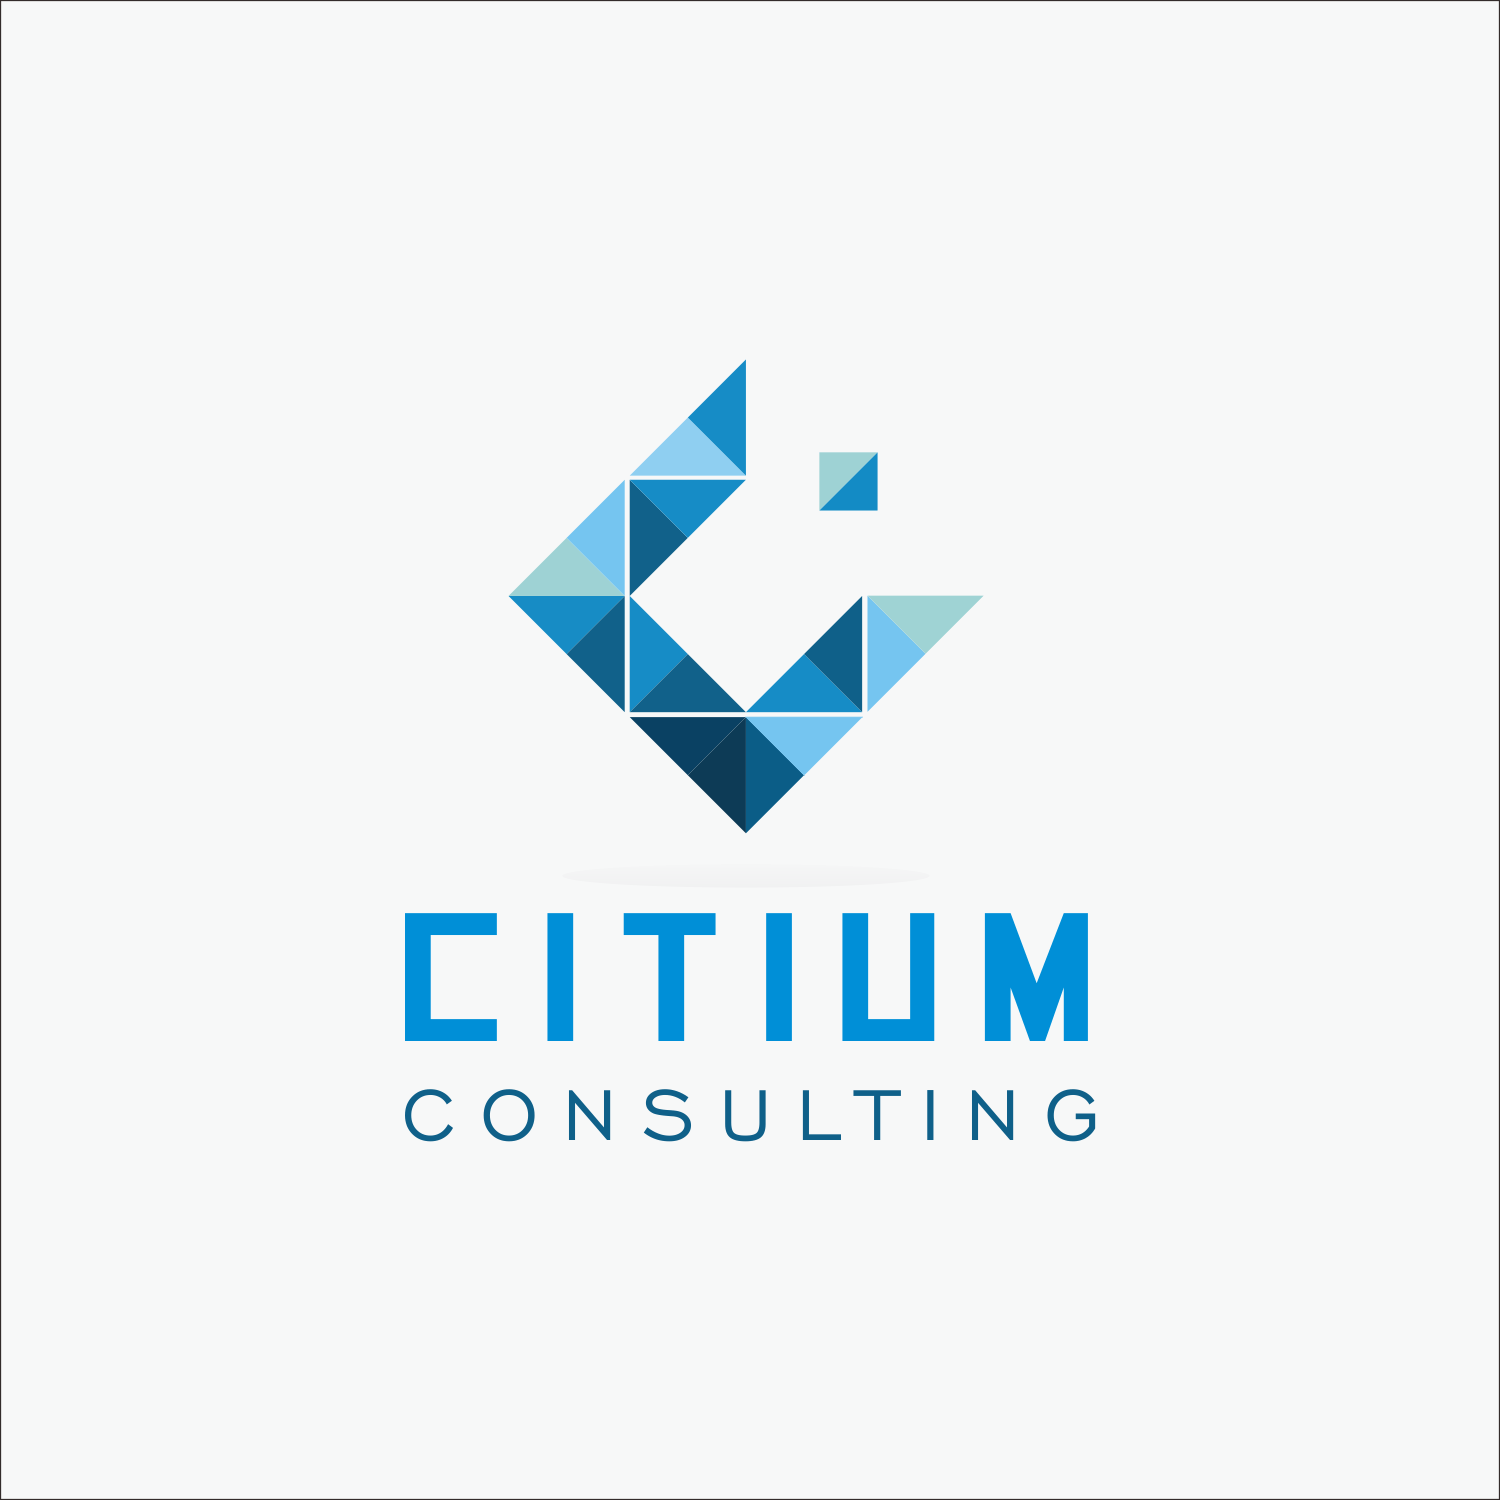 Consultant Logo - Modern, Professional, Business Consultant Logo Design for Citium